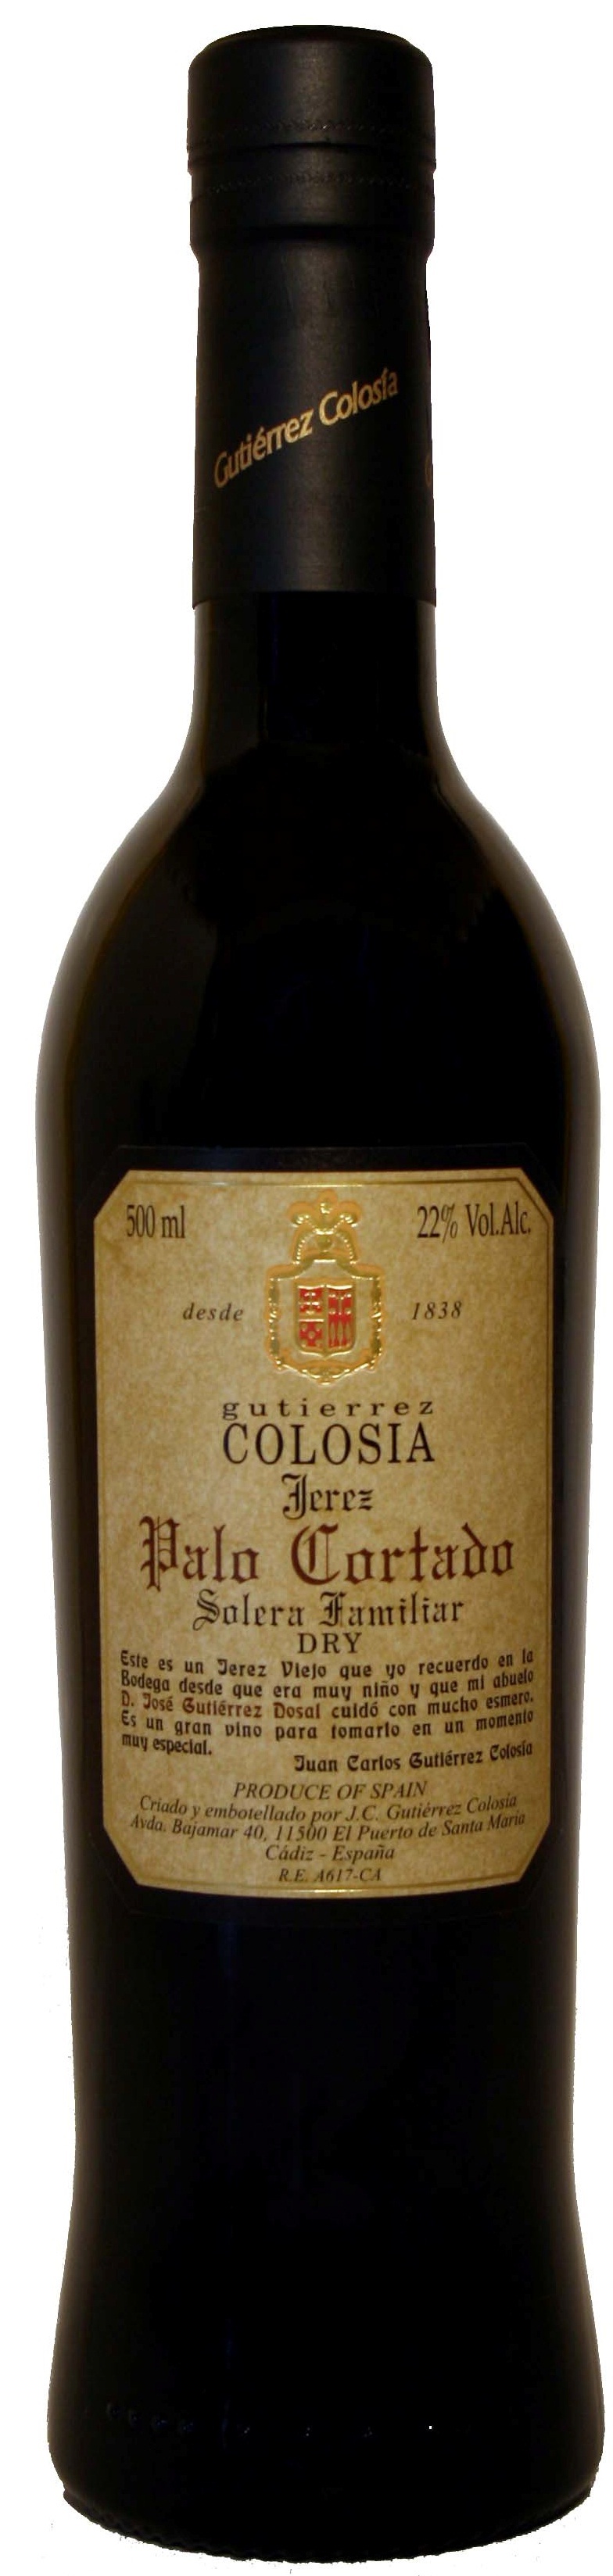 Bild von der Weinflasche Colosía Solera Familiar Palo Cortado